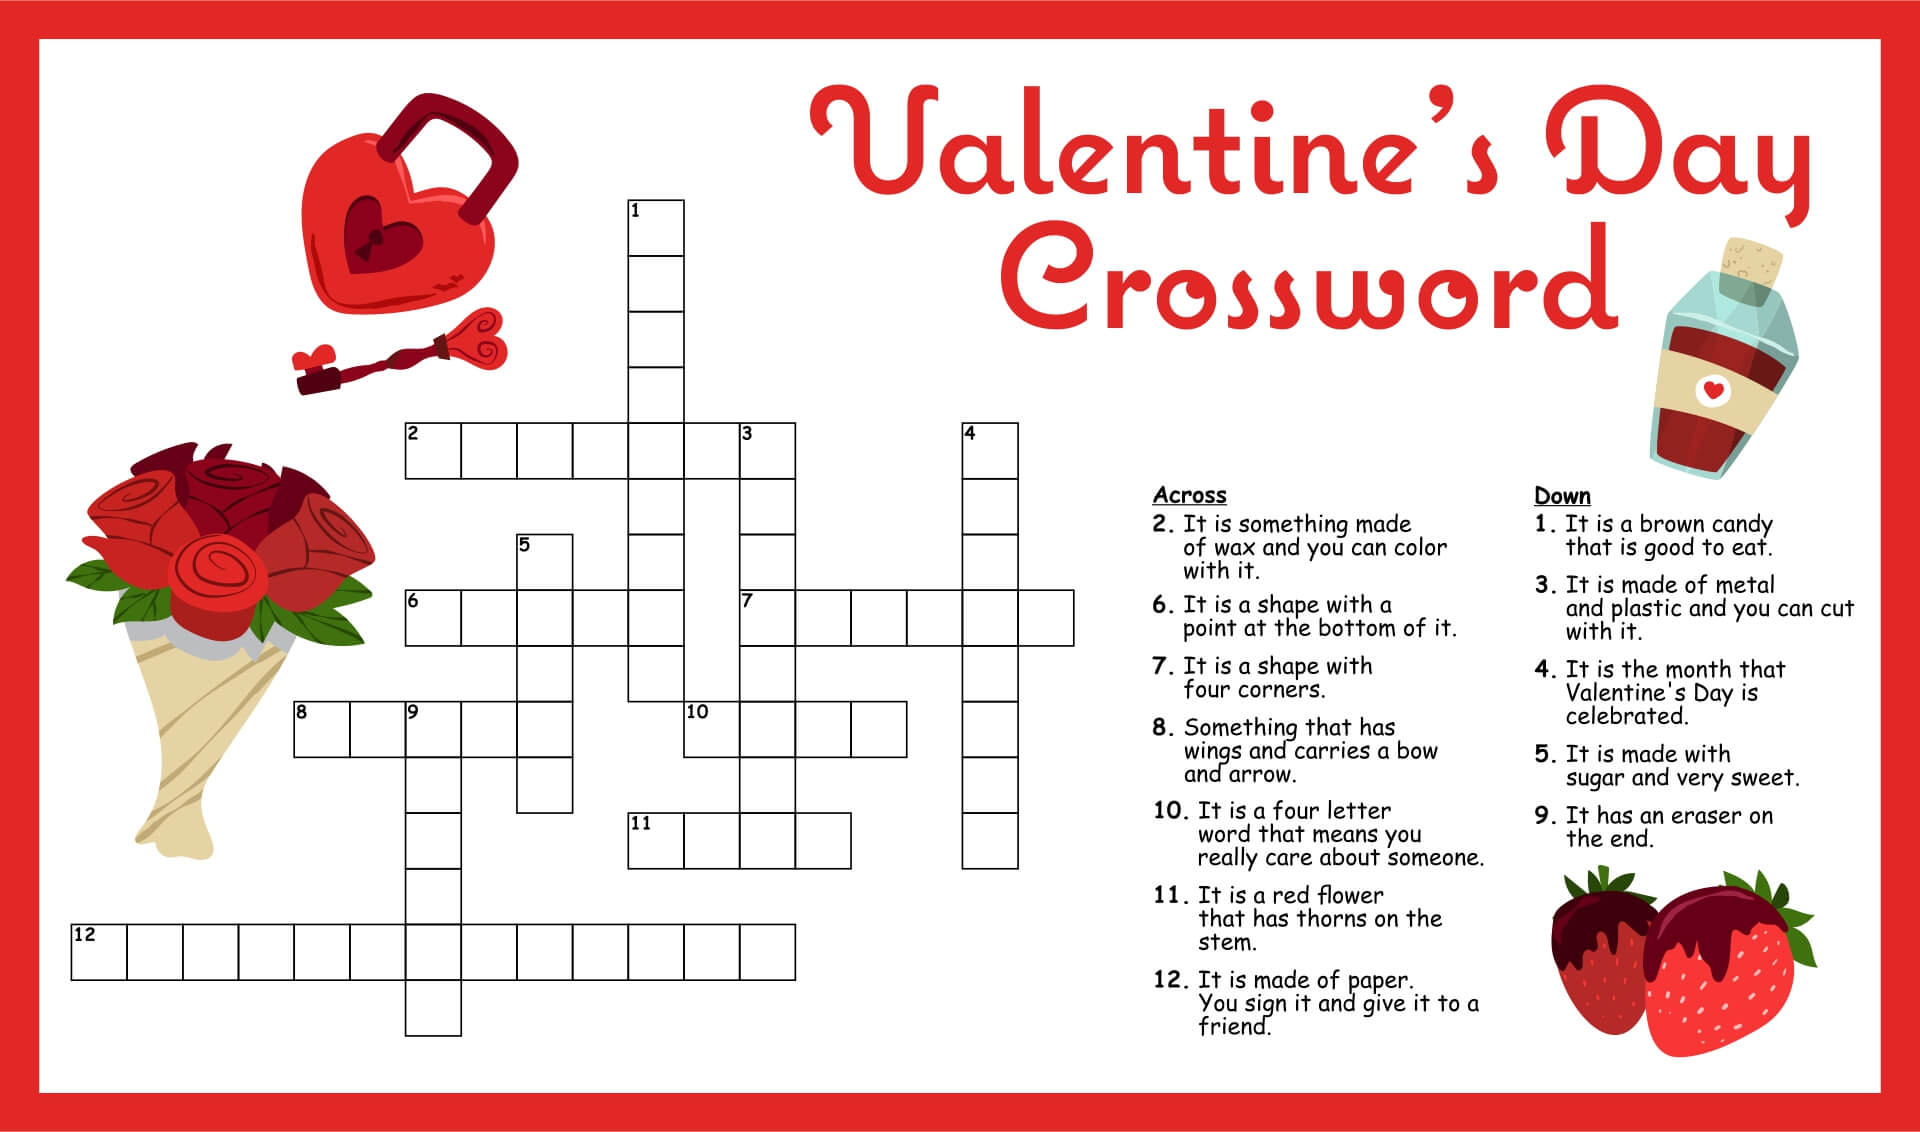 1.Romantic Crossword Puzzle: